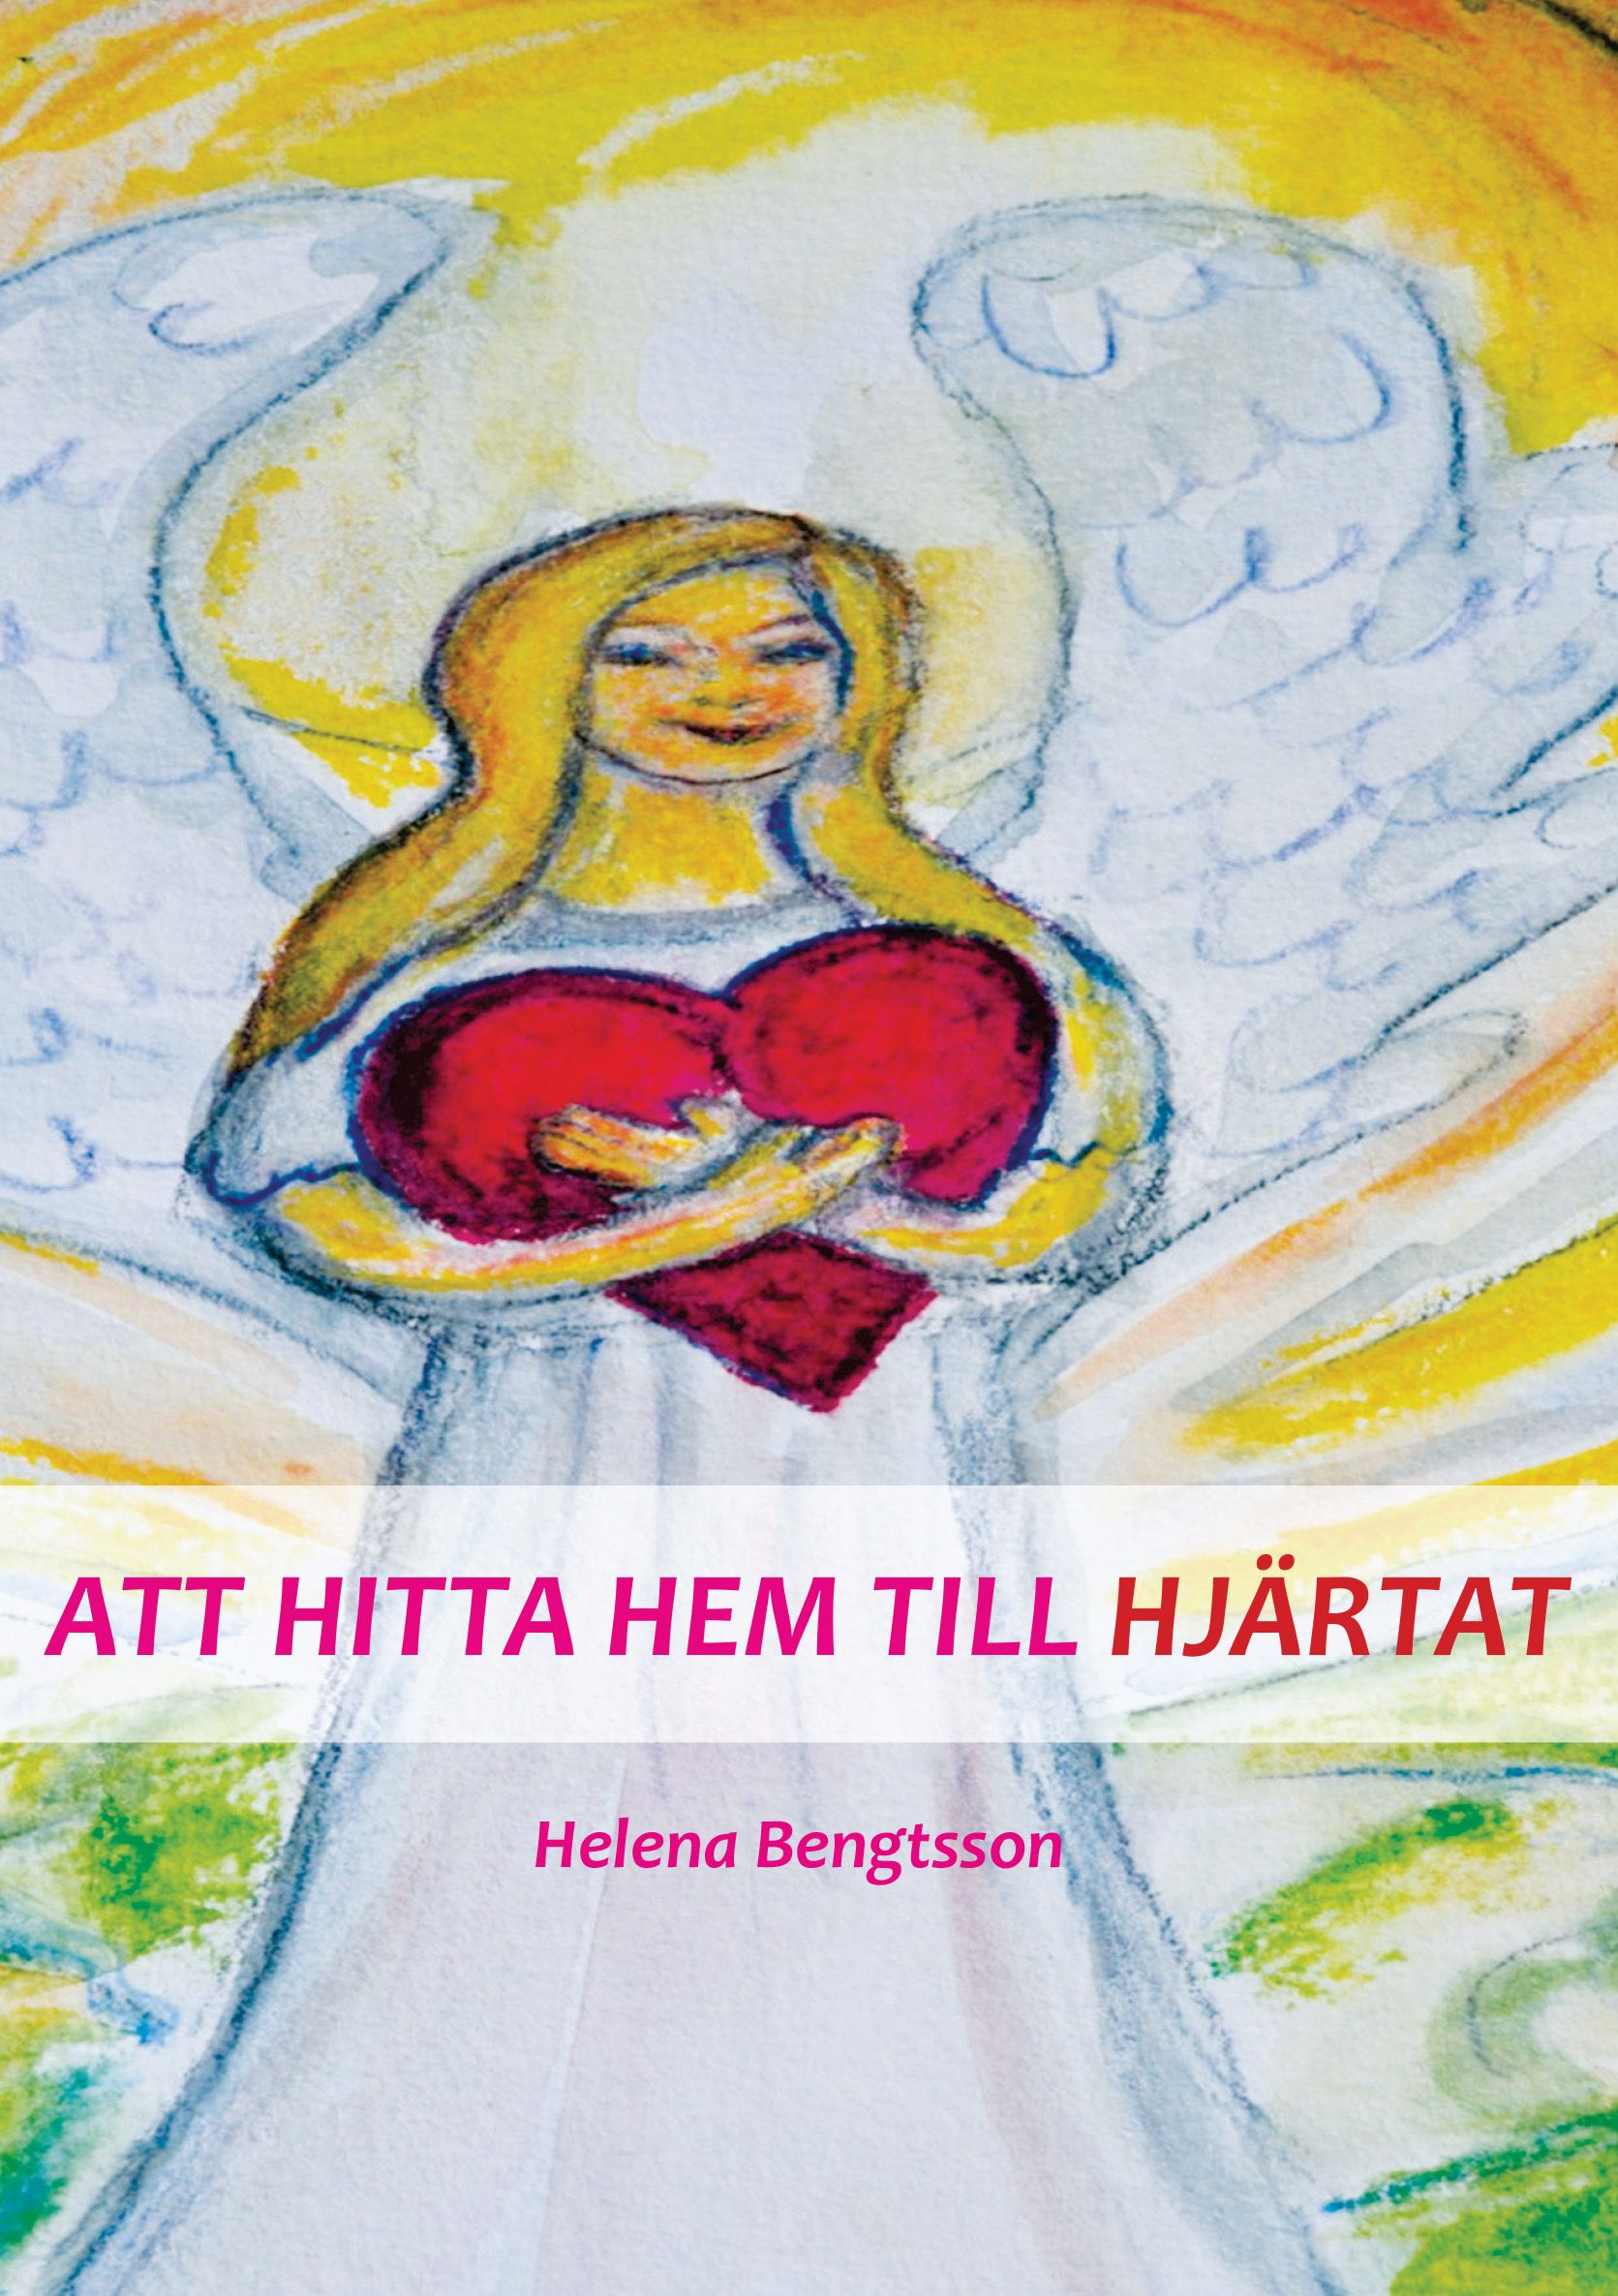 ATT HITTA HEM TILL HJÄRTAT, e-bok av Helena Bengtsson